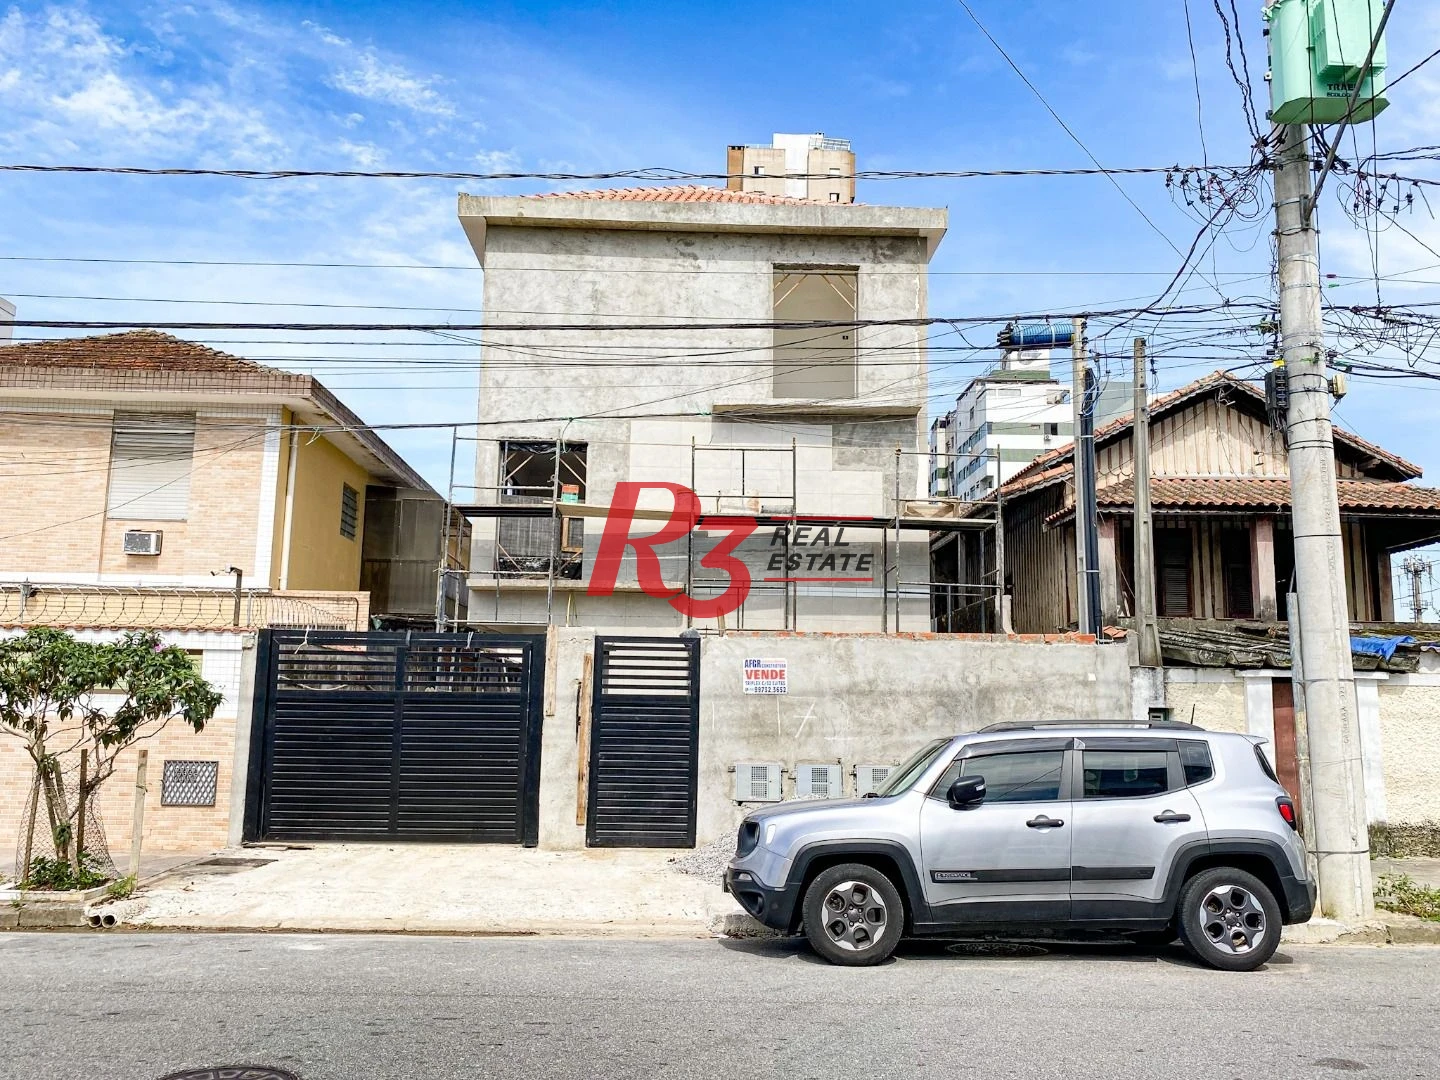 Sobrado triplex  à venda  em villagio no bairro do Macuco. 94 m², 2 suítes, vaga para carro e moto e espaço com churrasqueira.